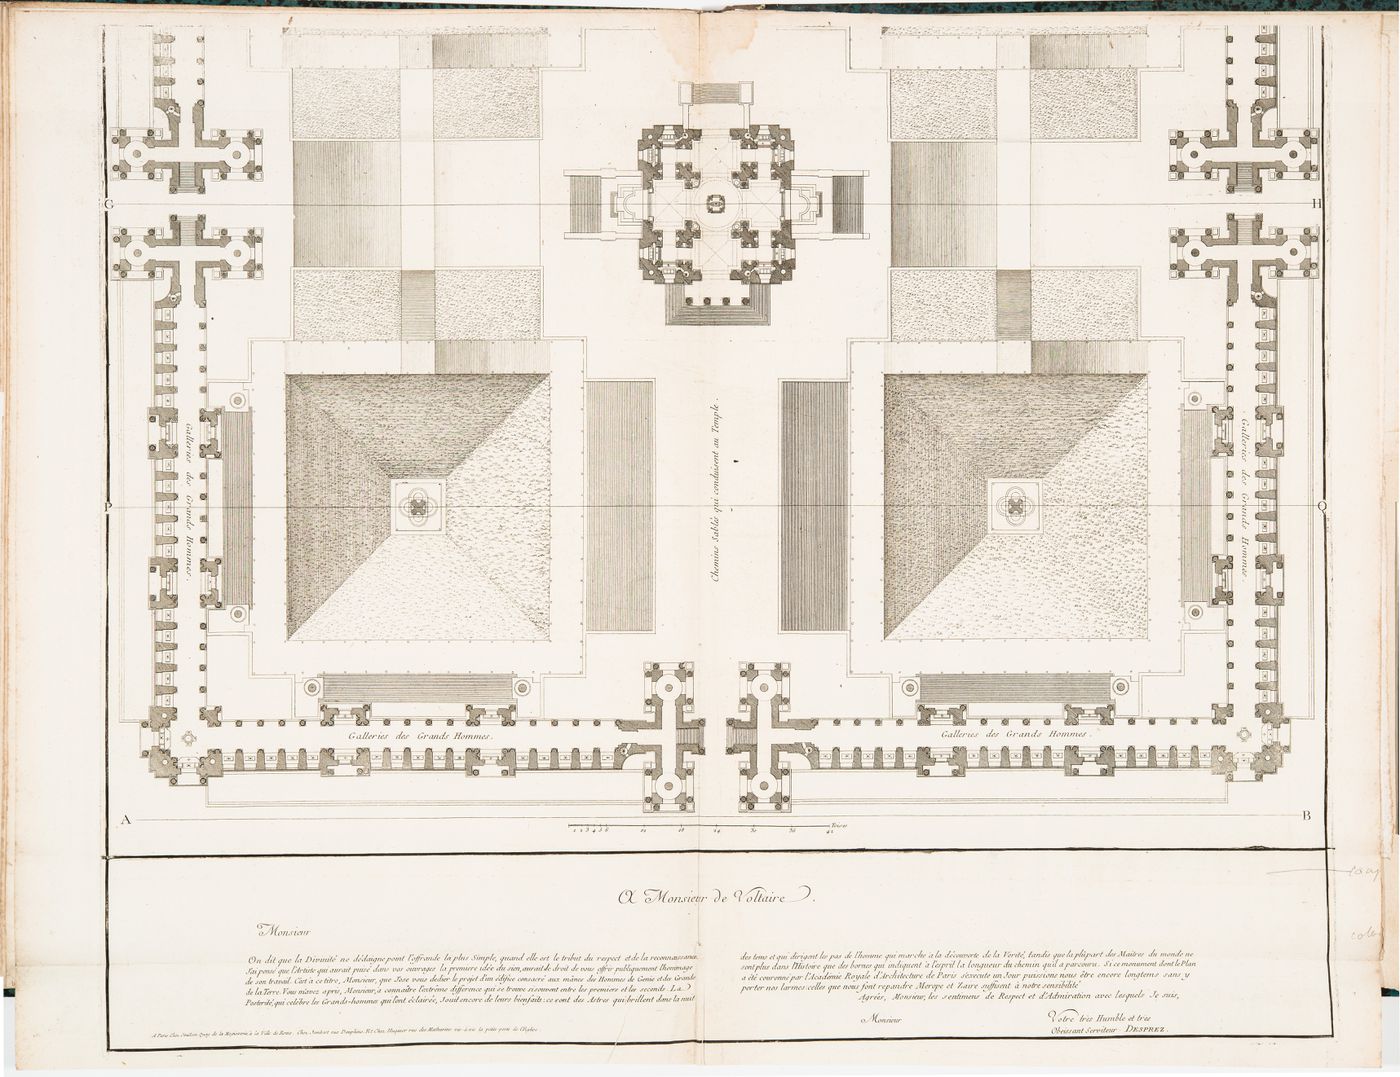 Design by Louis Jean Desprez for a funerary temple in honour of "les cendres des rois et les grands hommes": Partial plan